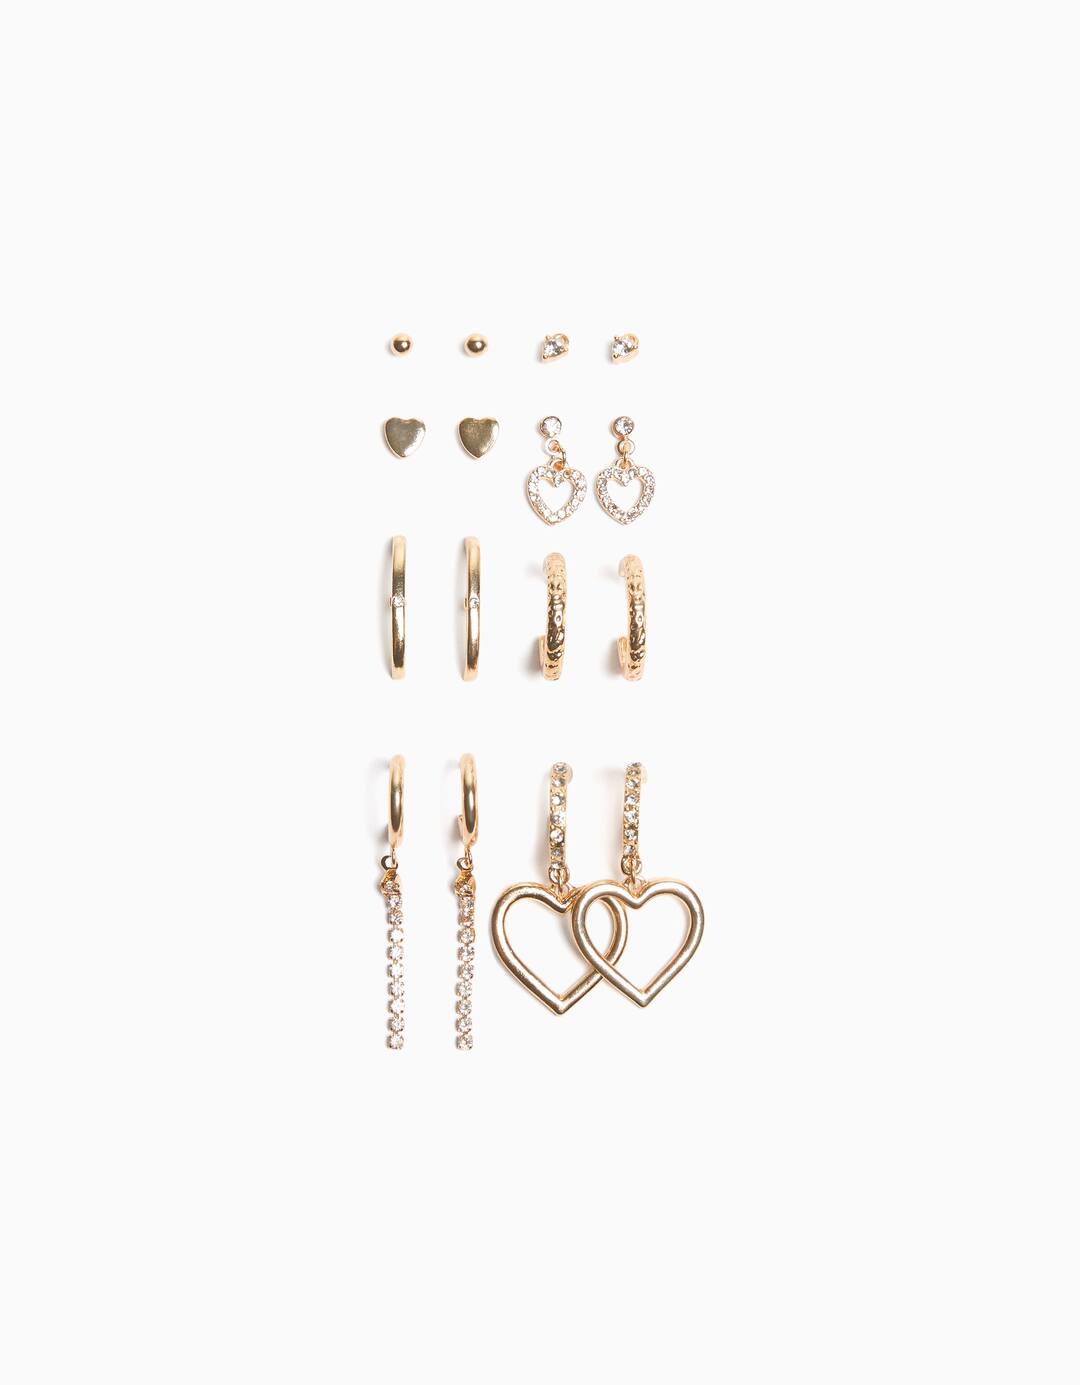 Set of 8 heart earrings